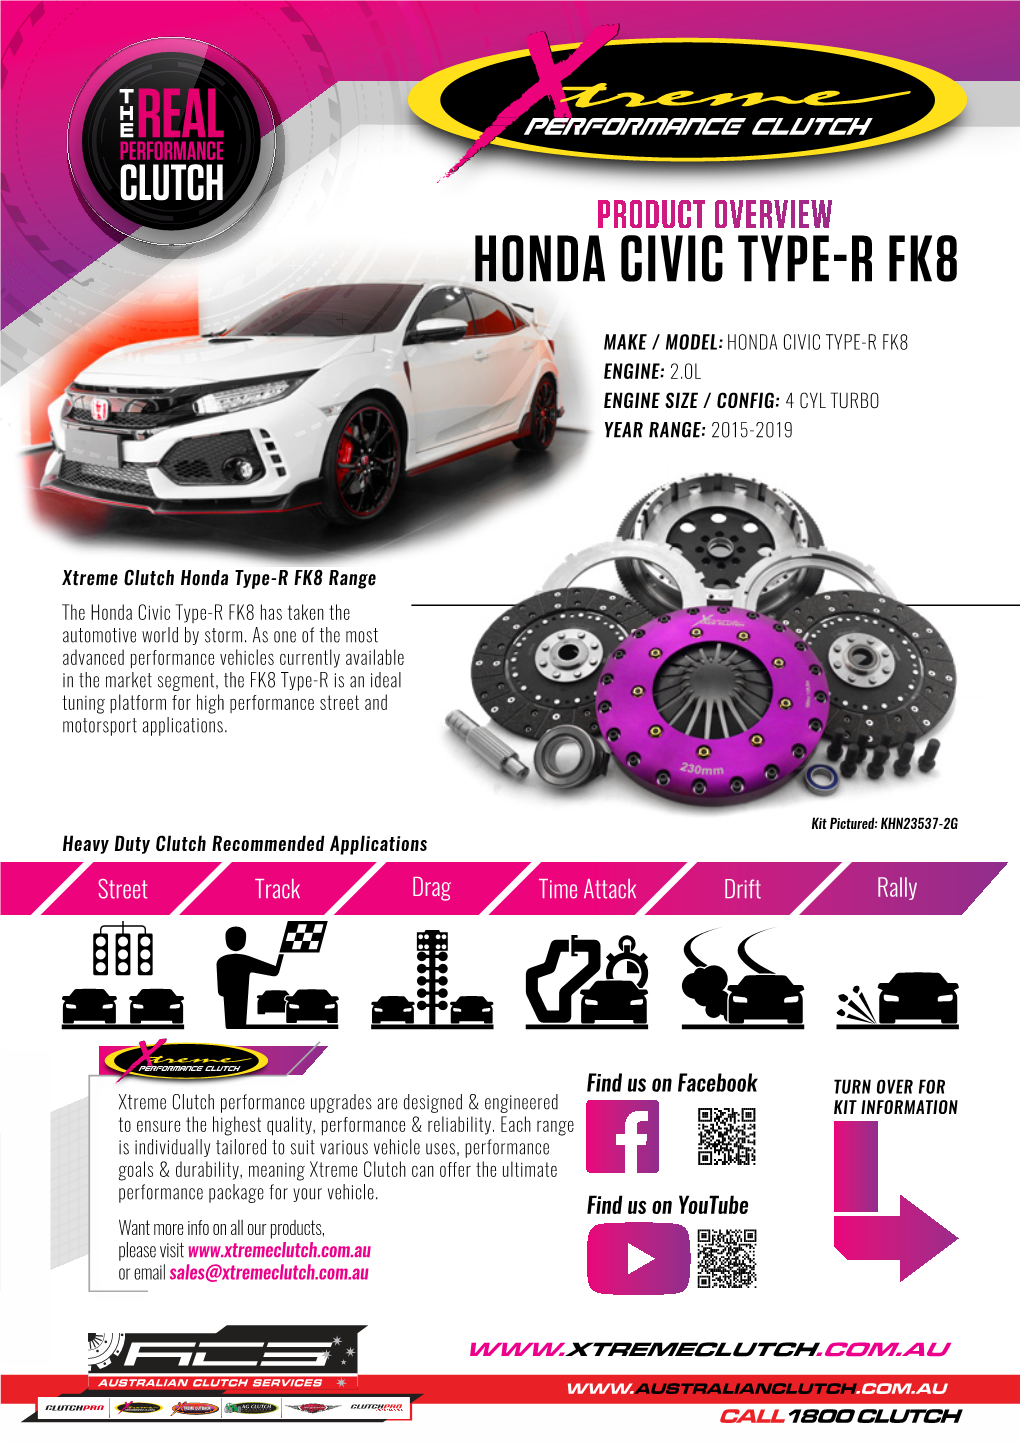 Honda Civic Type-R Fk8